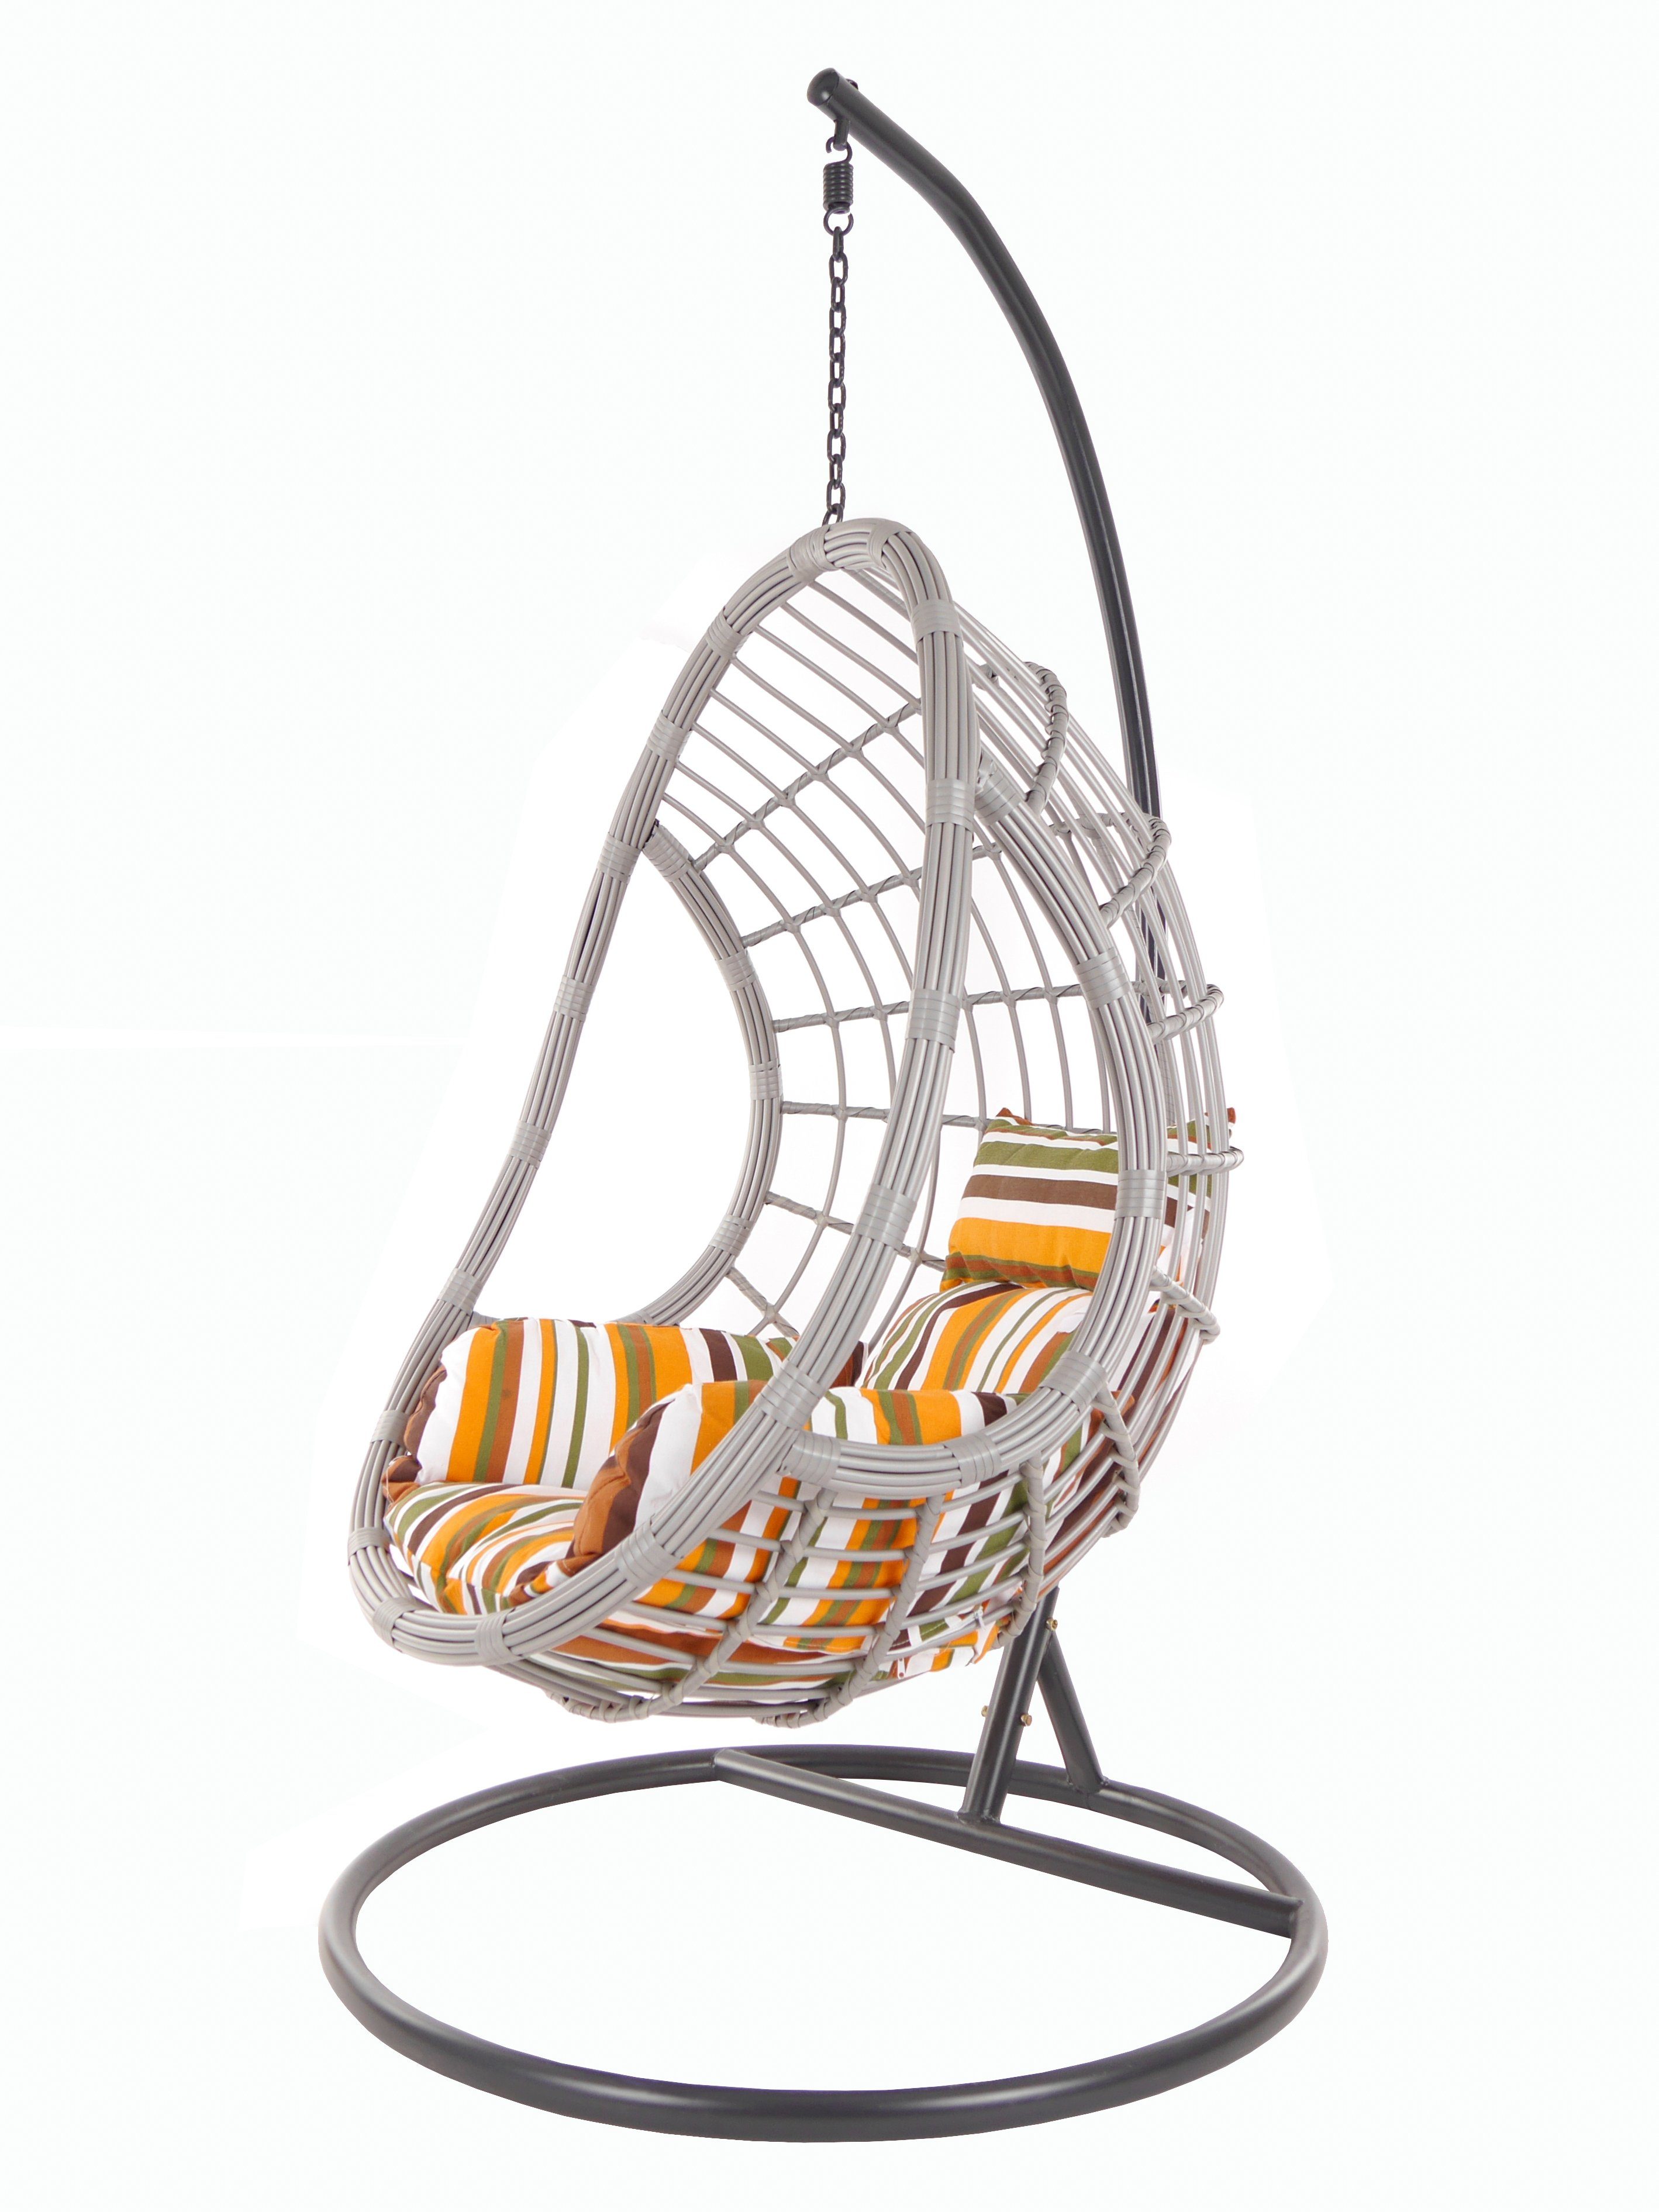 KIDEO Hängesessel PALMANOVA lightgrey, Swing Chair, Loungemöbel, Hängesessel mit Gestell und Kissen gestreift retro (8640 retro stripes)